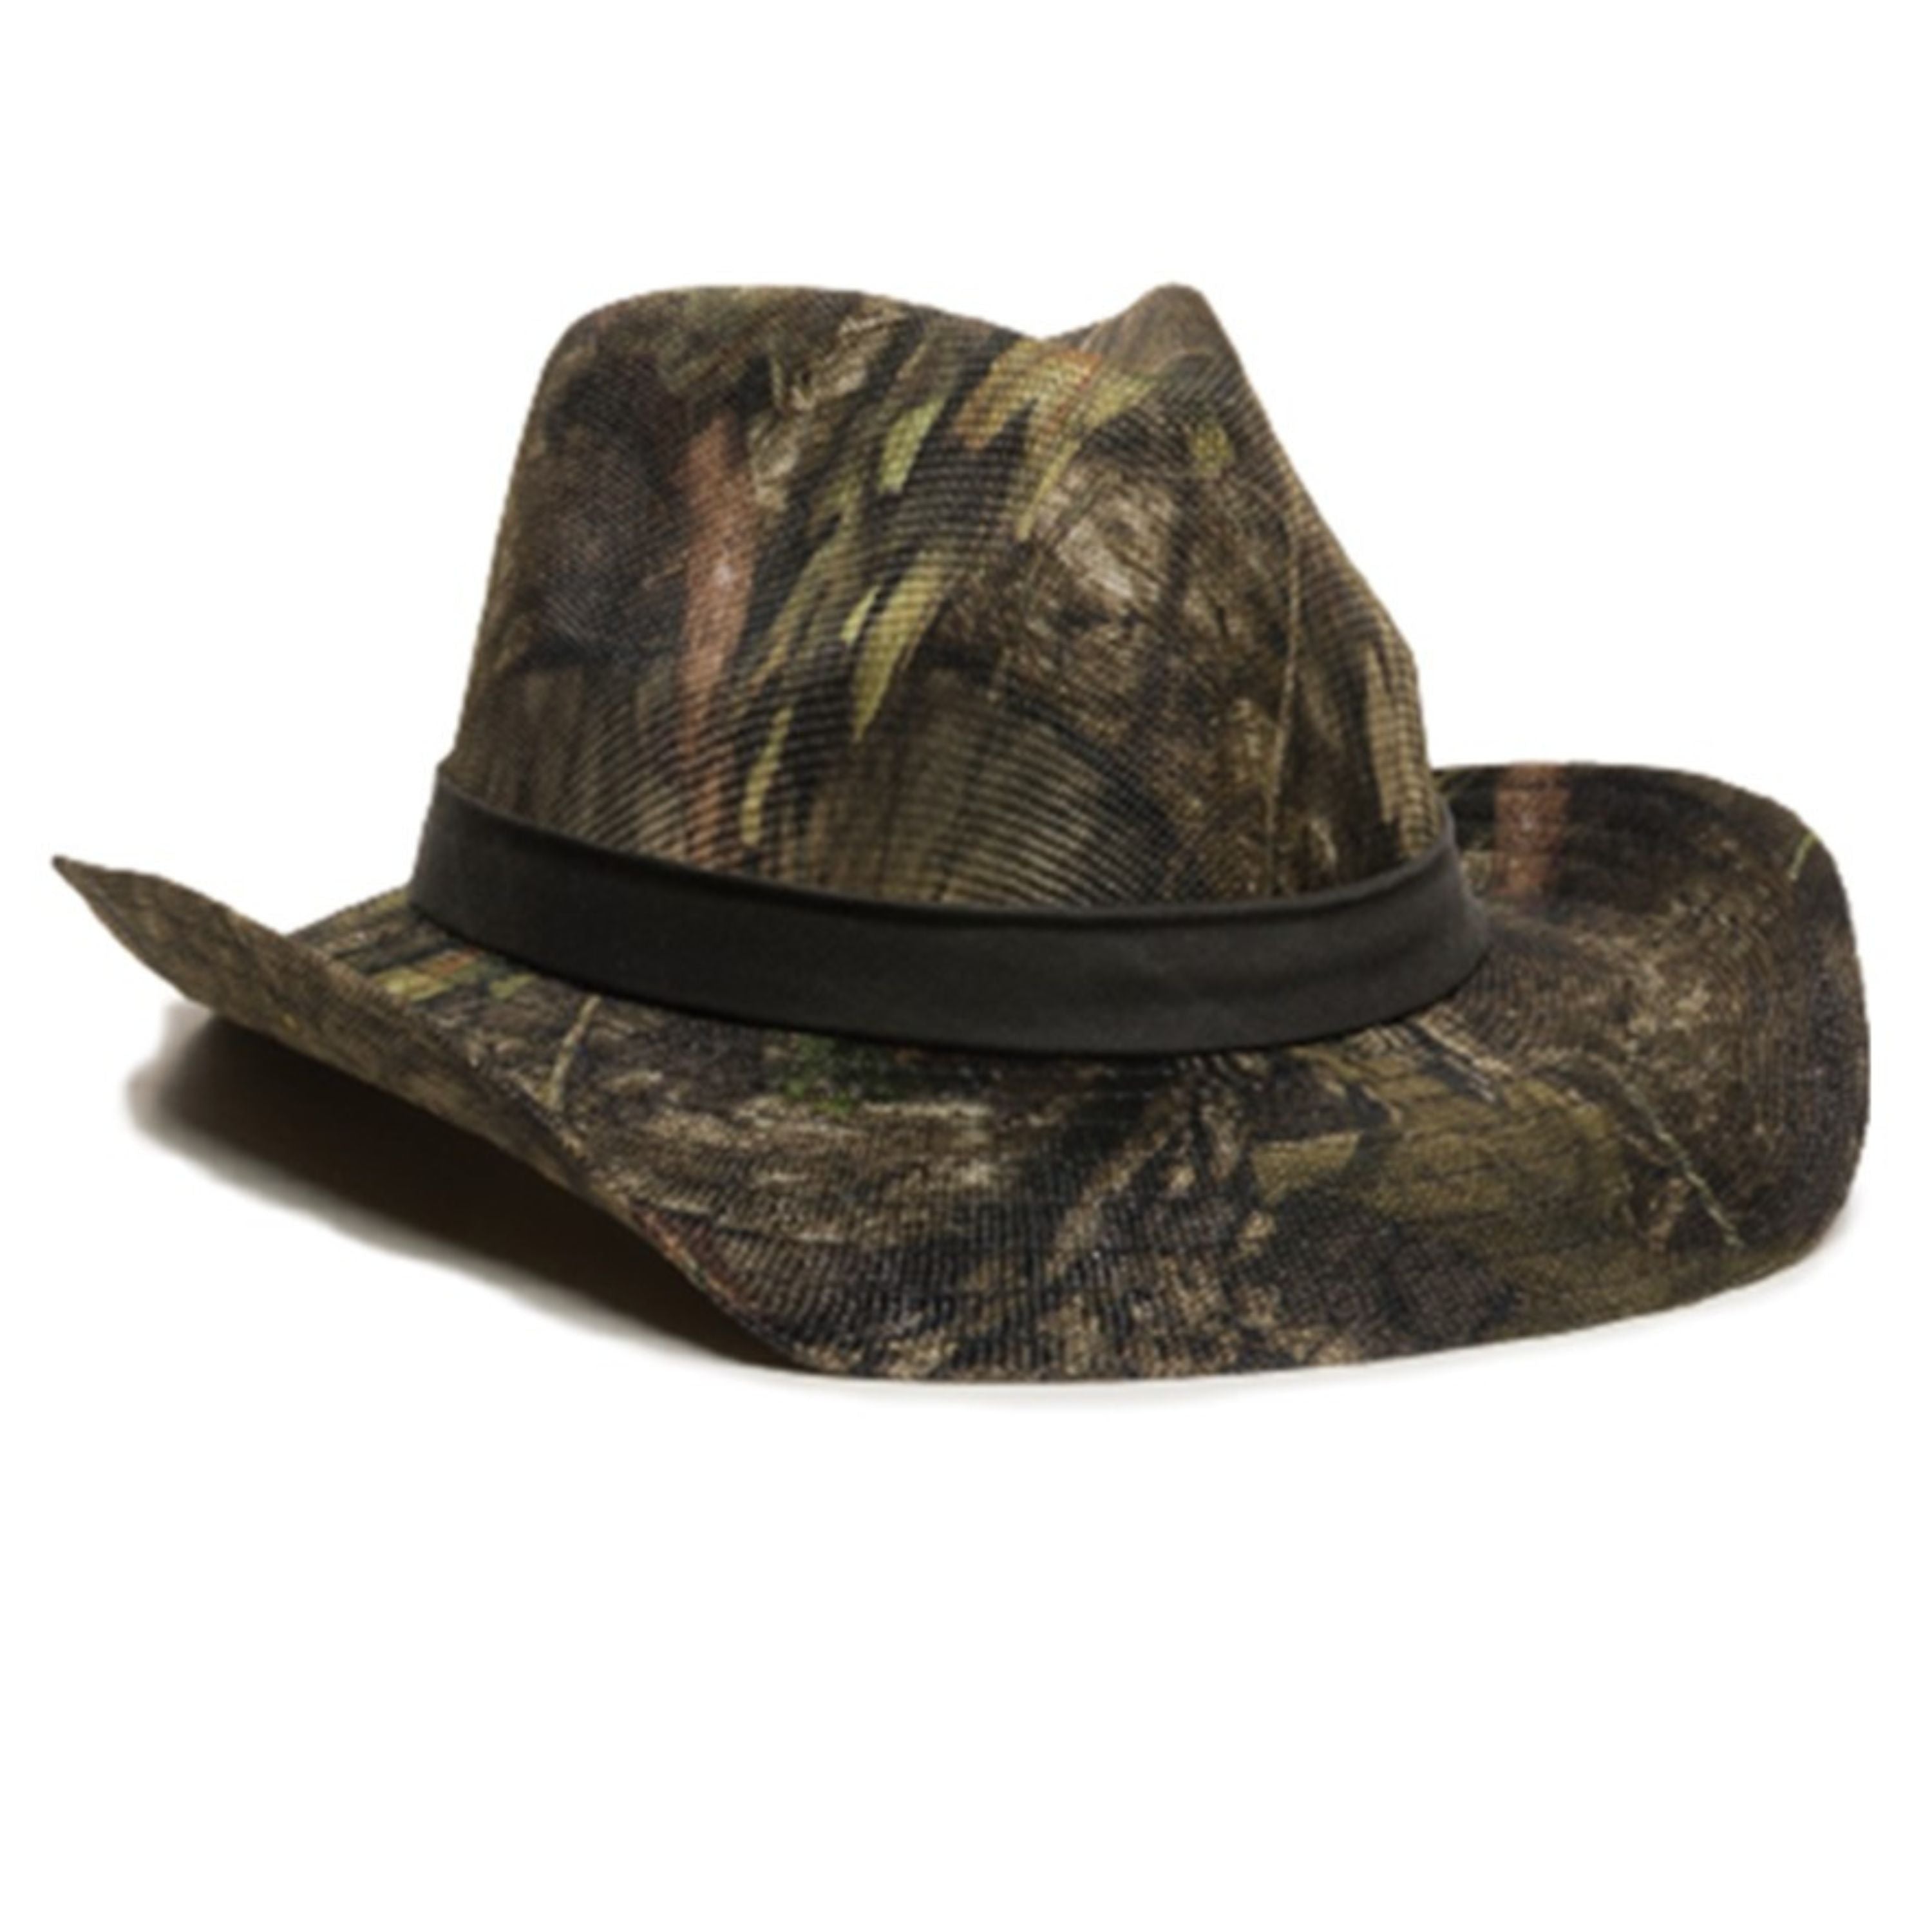 Cowboy hat - Men's